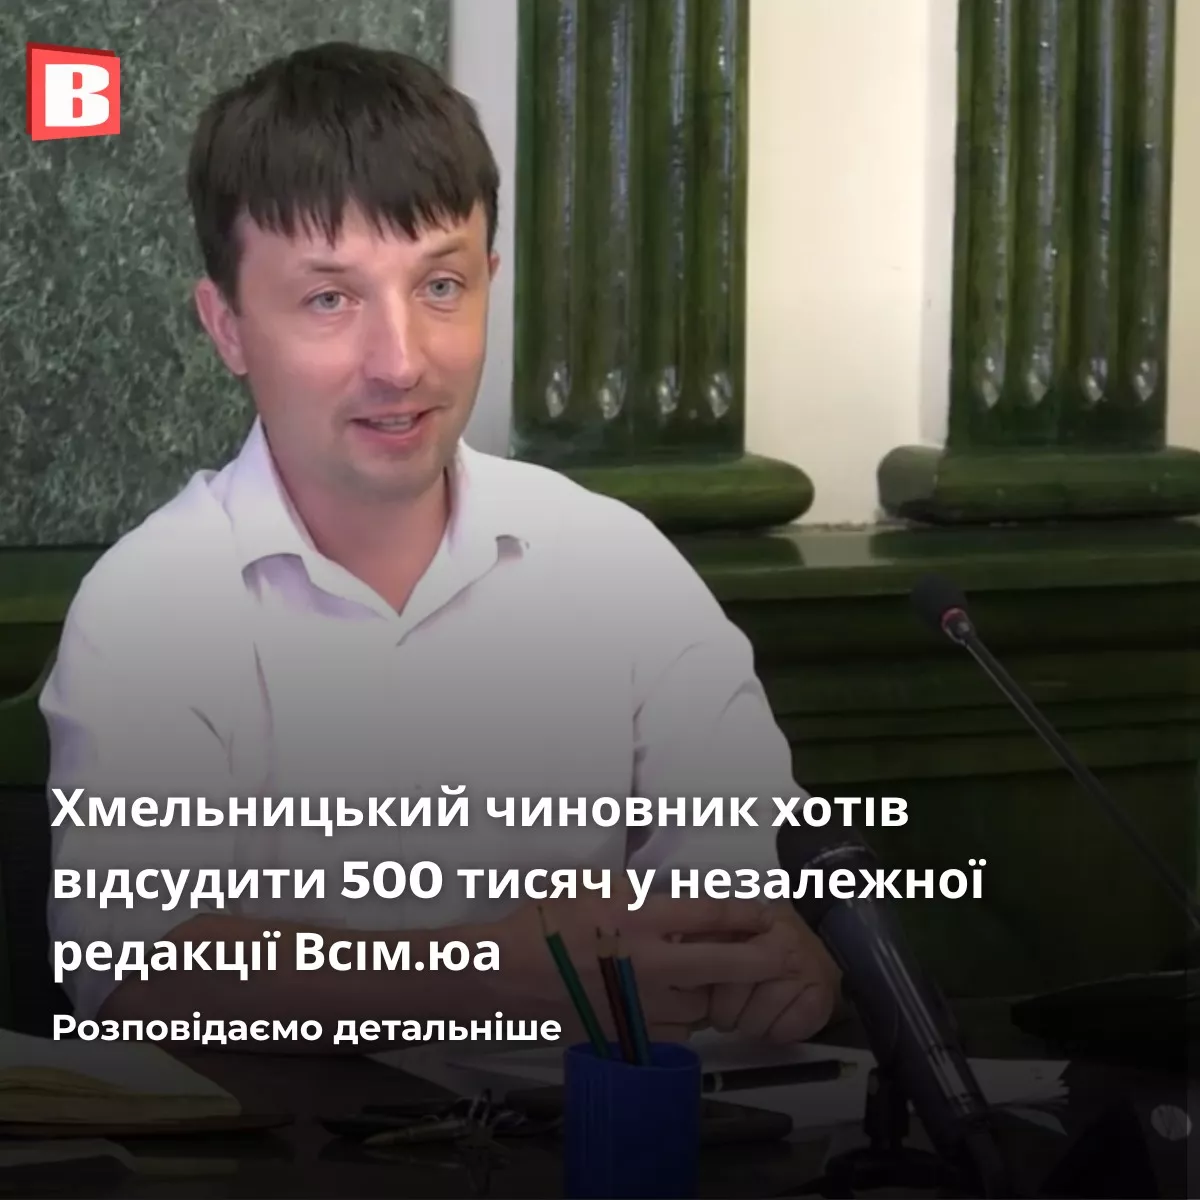 Видання Vsim.ua програло справу заступнику мера Хмельницького та подаватиме апеляцію